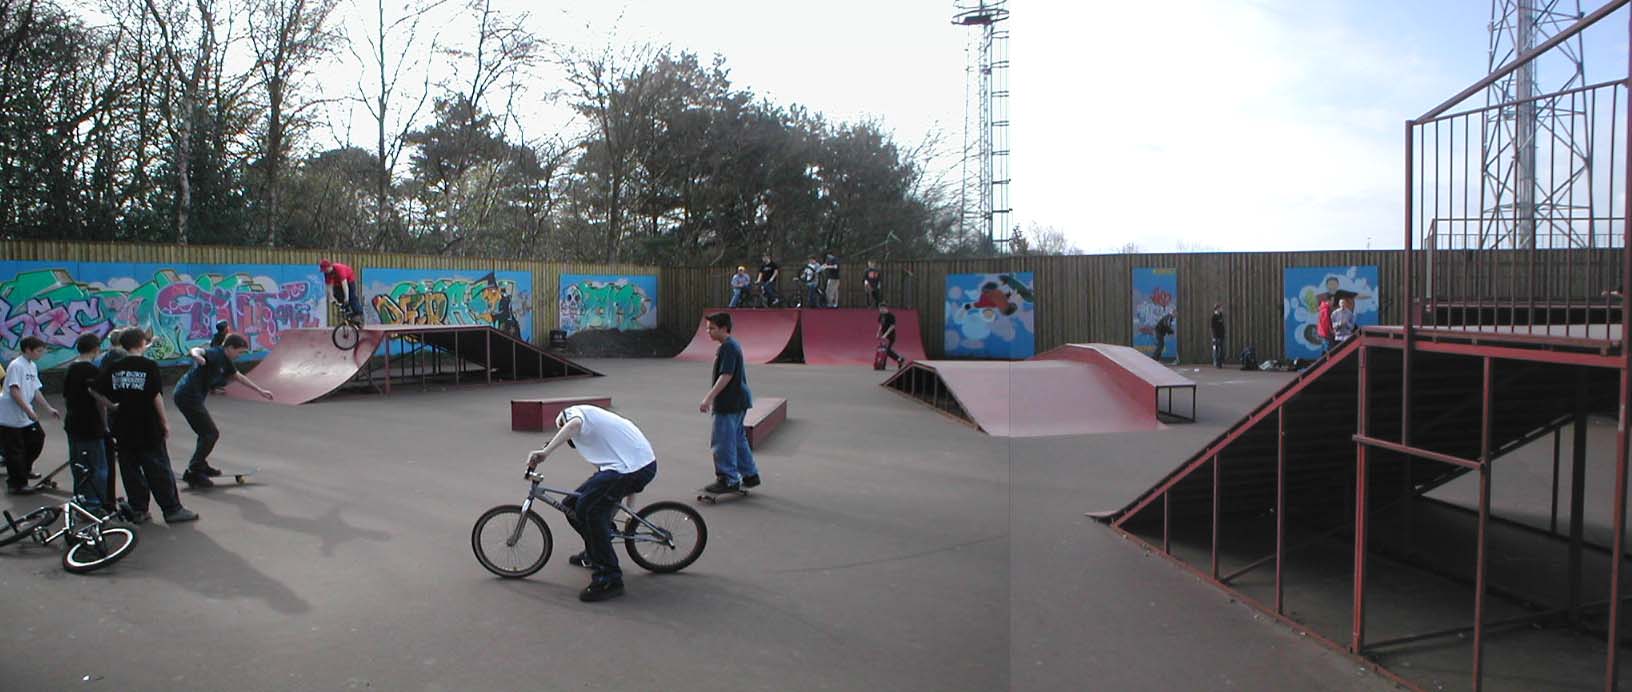 longhill skatepark bracknell review tips skateboarding in berkshire u k